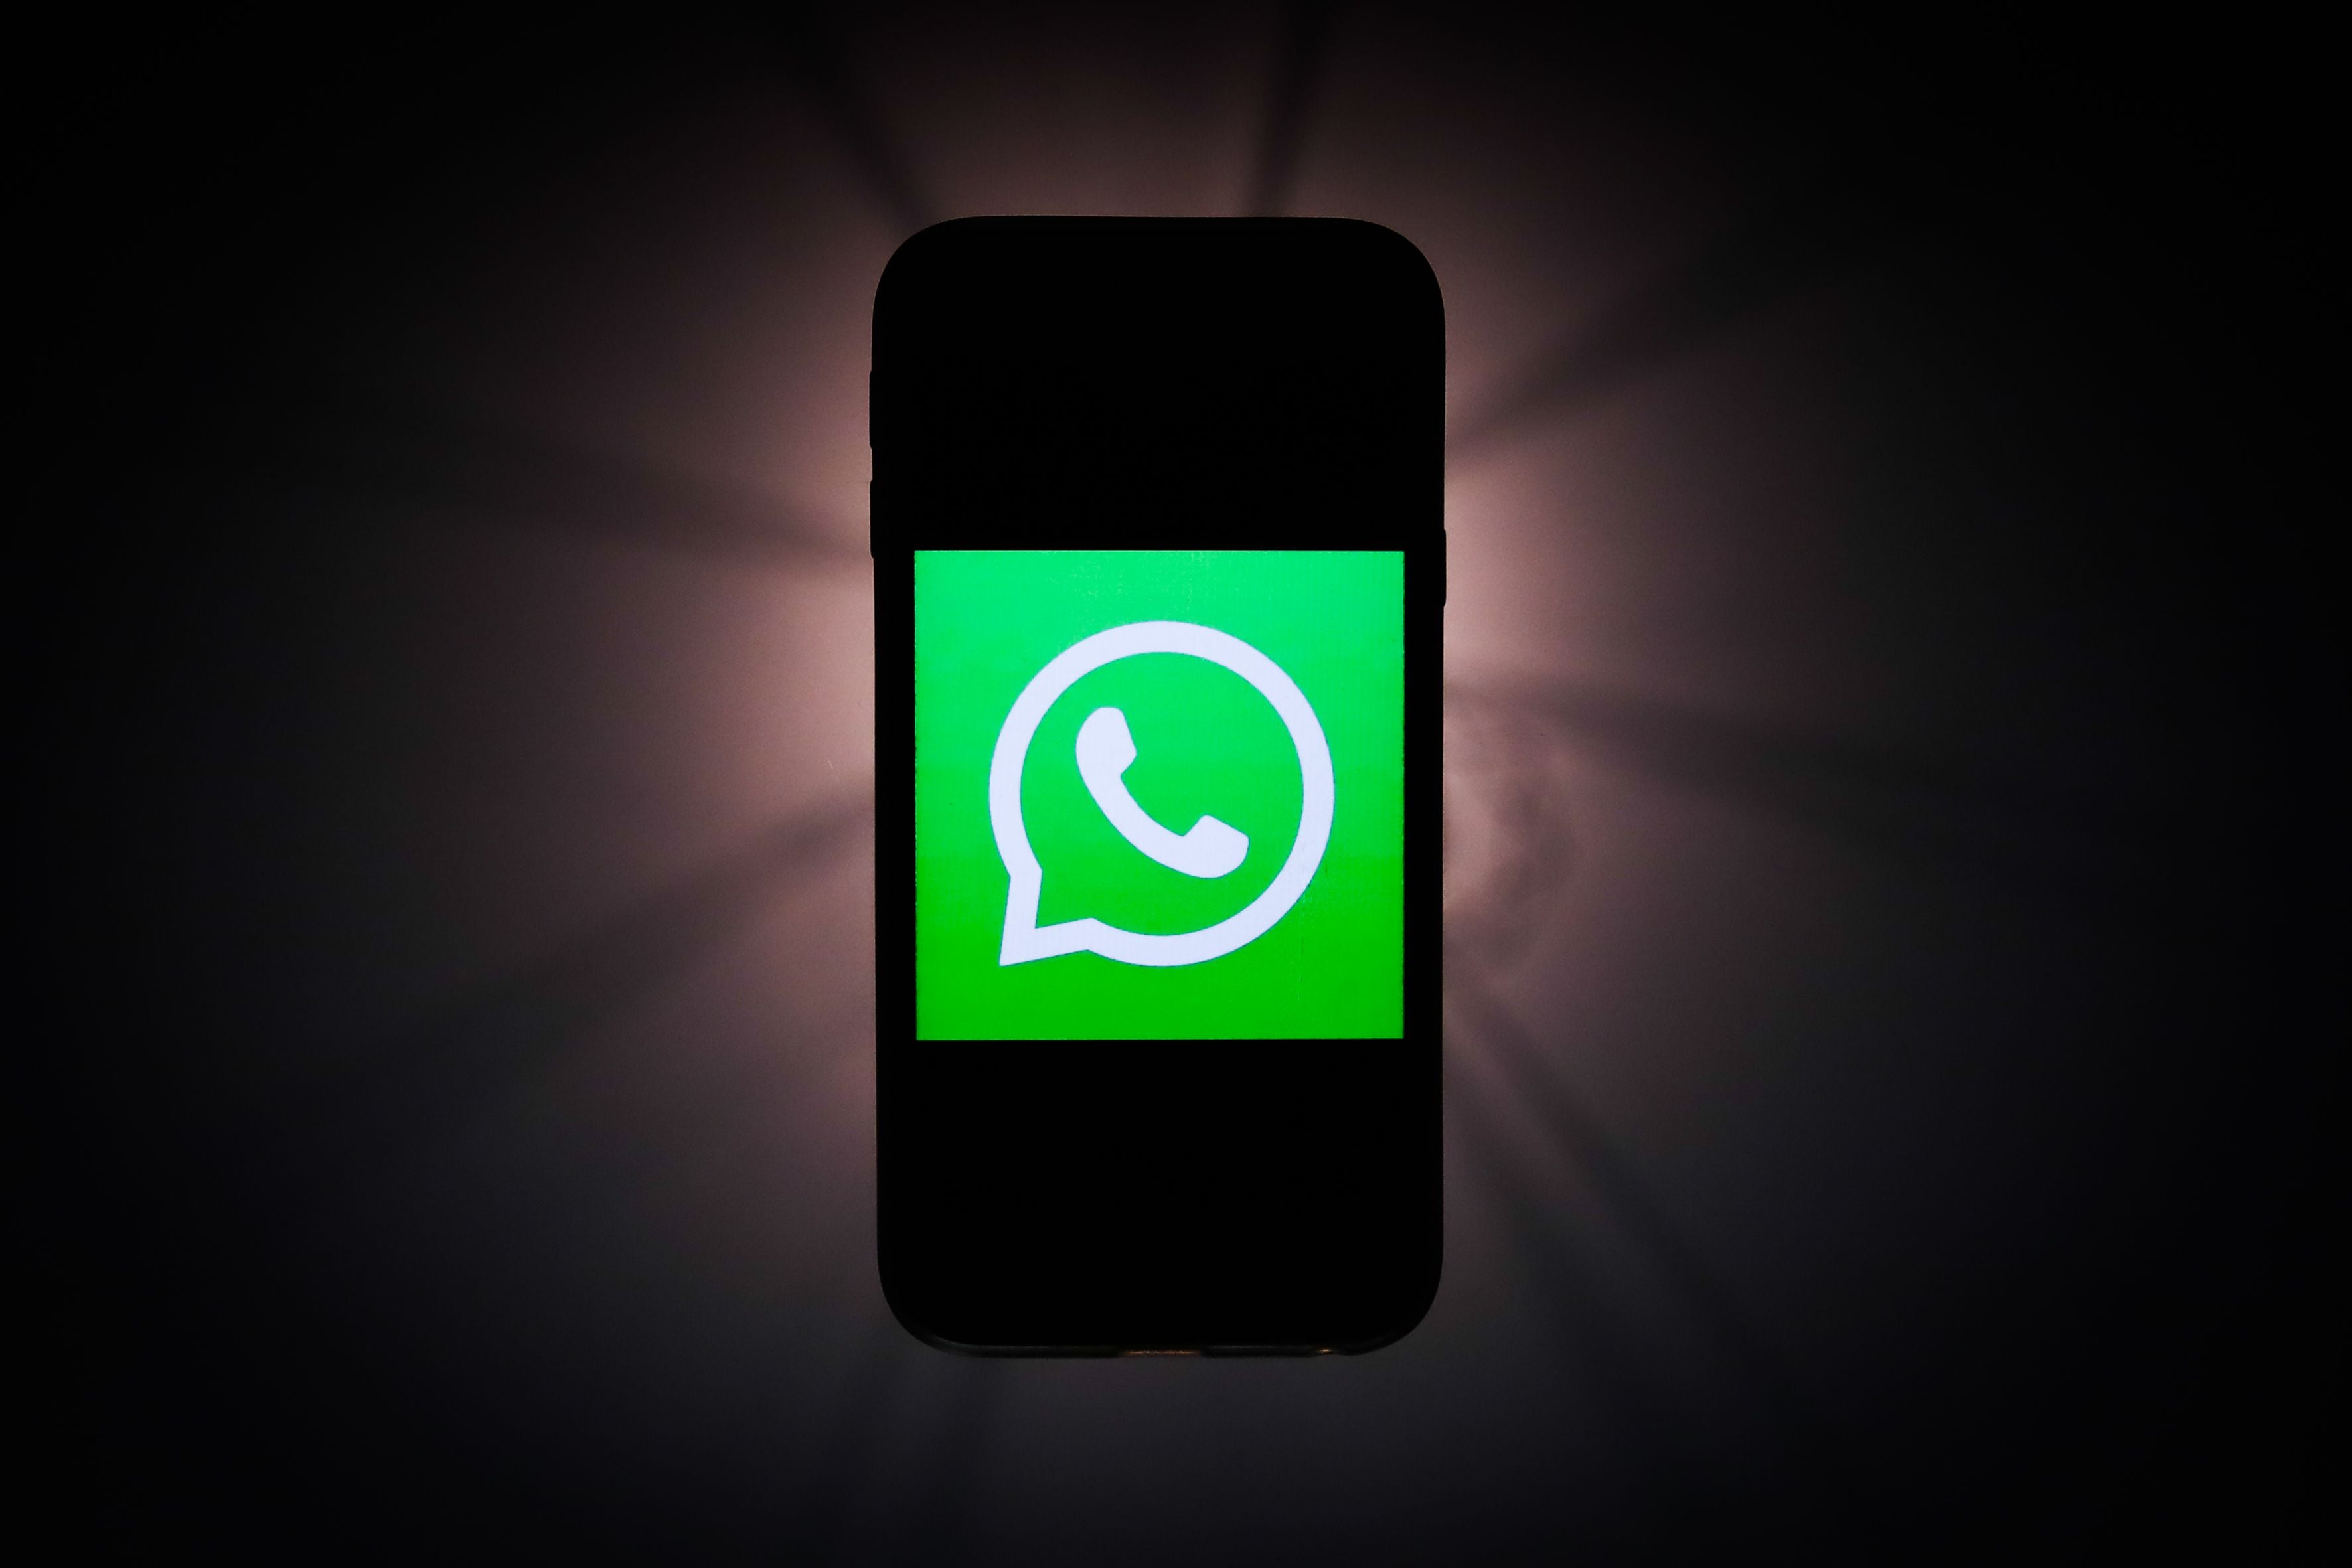 Mensajes temporales de WhatsApp: qué son, qué límites tienen y cómo usarlos